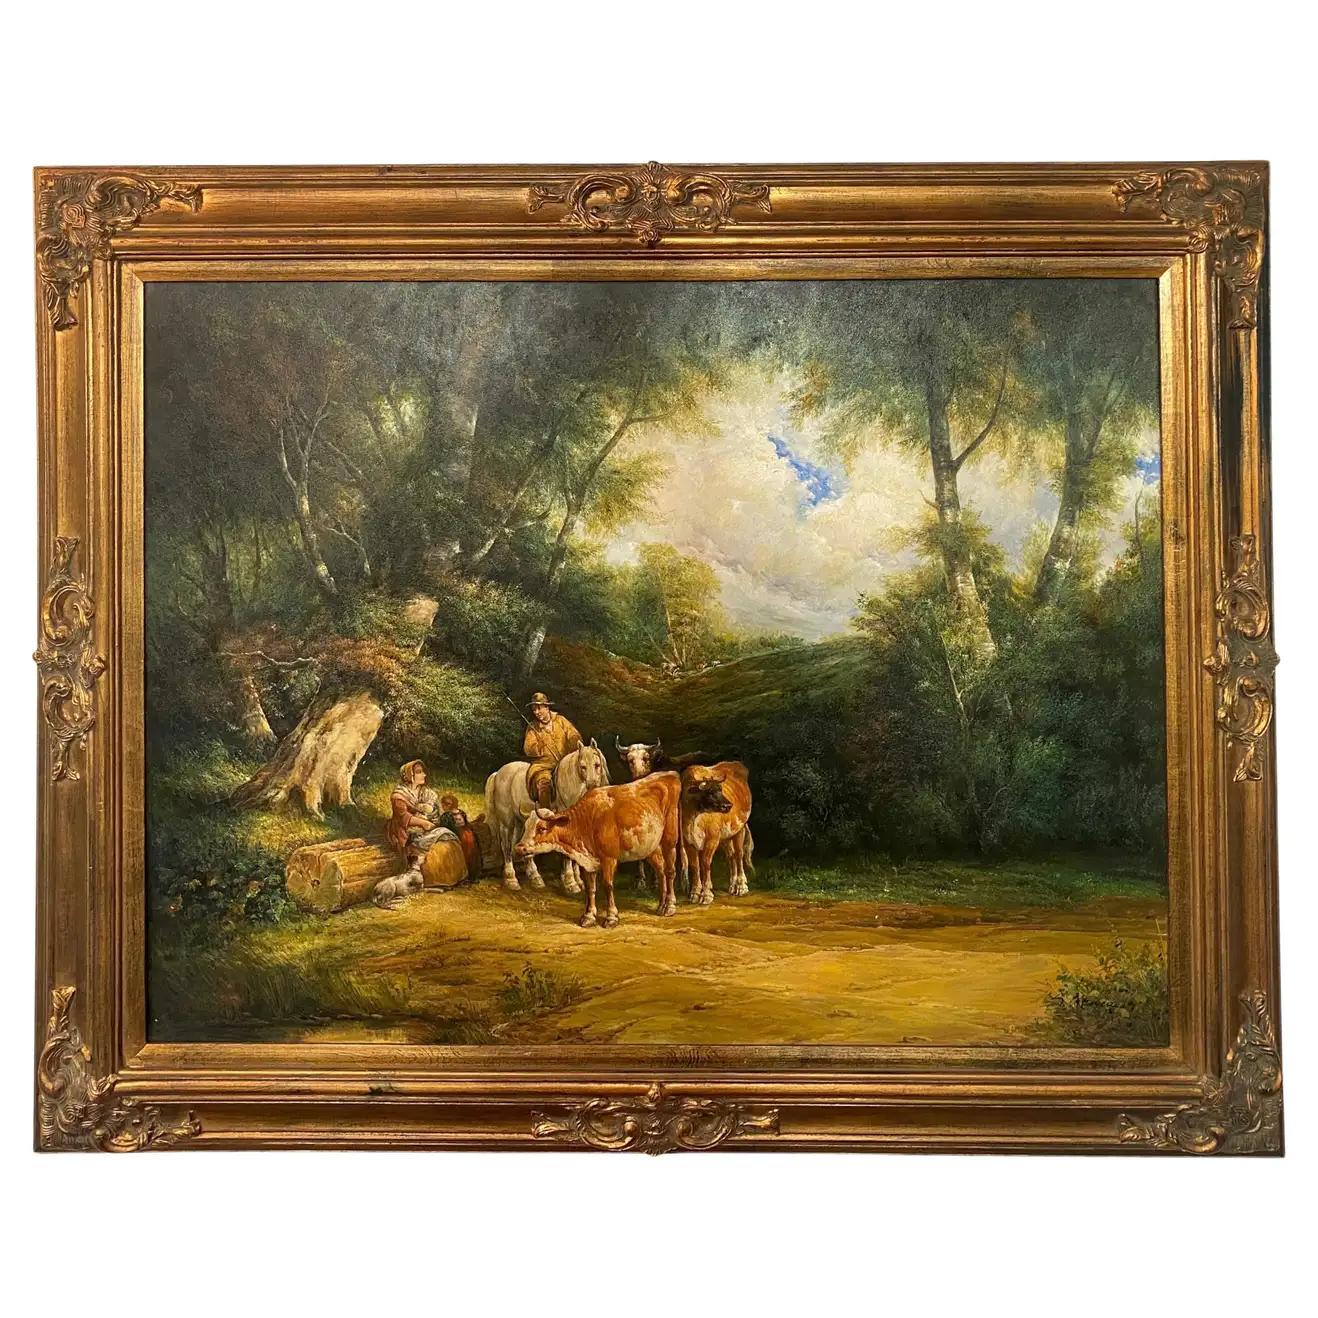 Grande peinture impressionniste à l'huile sur toile d'un fermier avec du bétail, encadrée